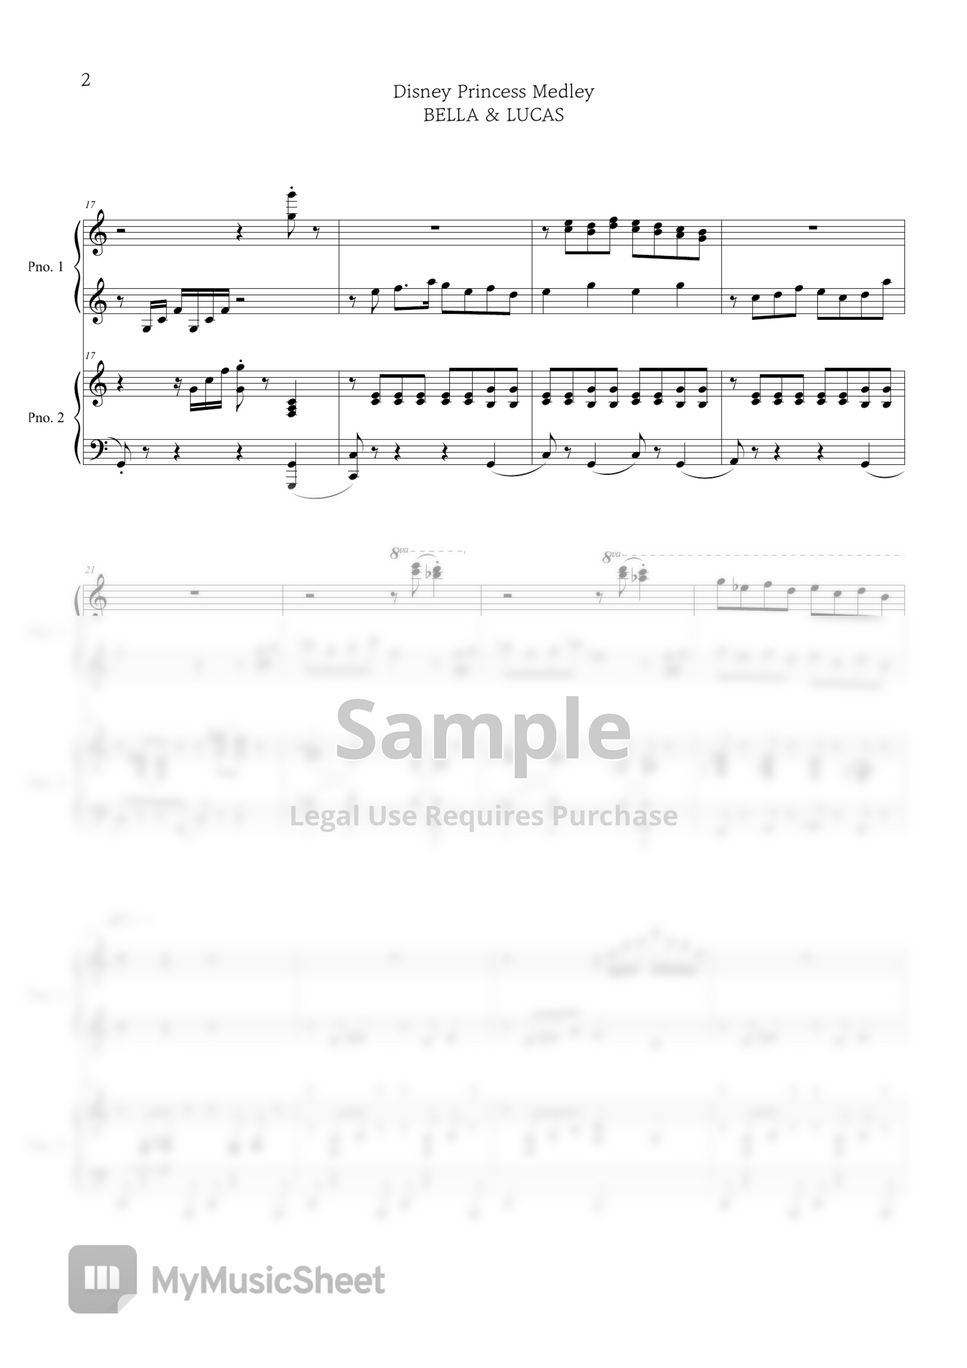 Princess Medley (4hands piano) - Disney by BELLA&LUCAS